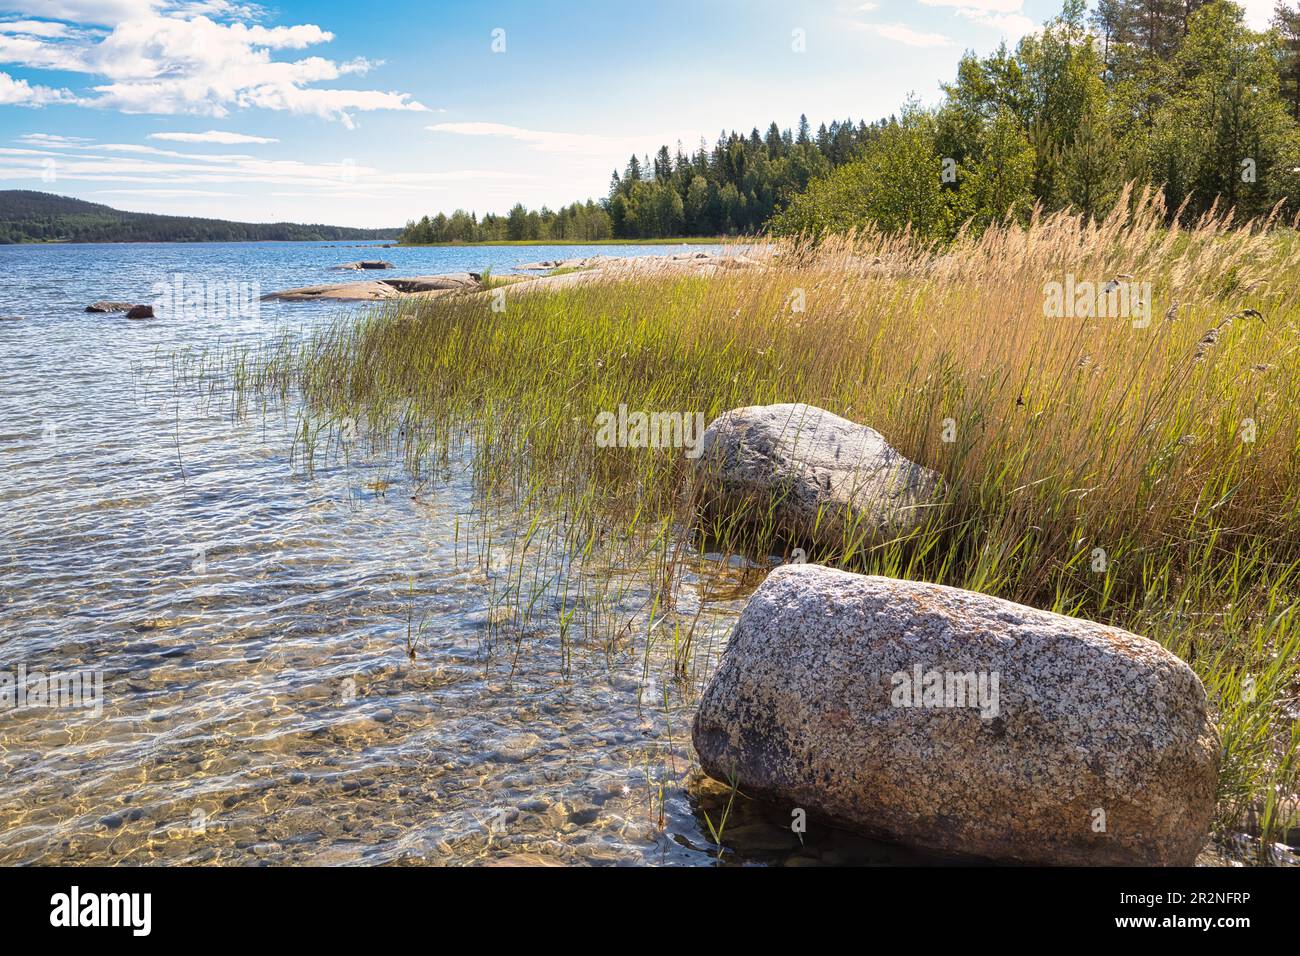 Shore section at Skuleskogen National park, Vaesternorrlands laen, Sweden Stock Photo